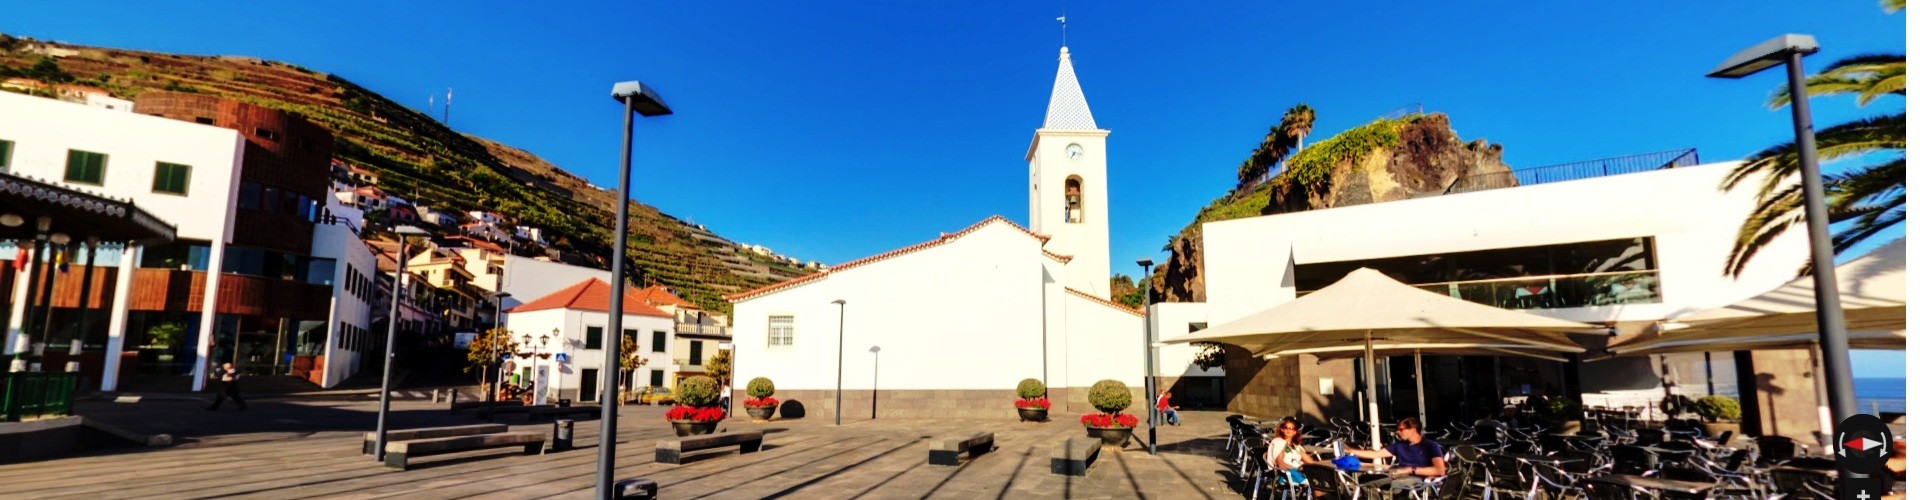 São Sebastião Parish Church, Camara de Lobos, Madeira